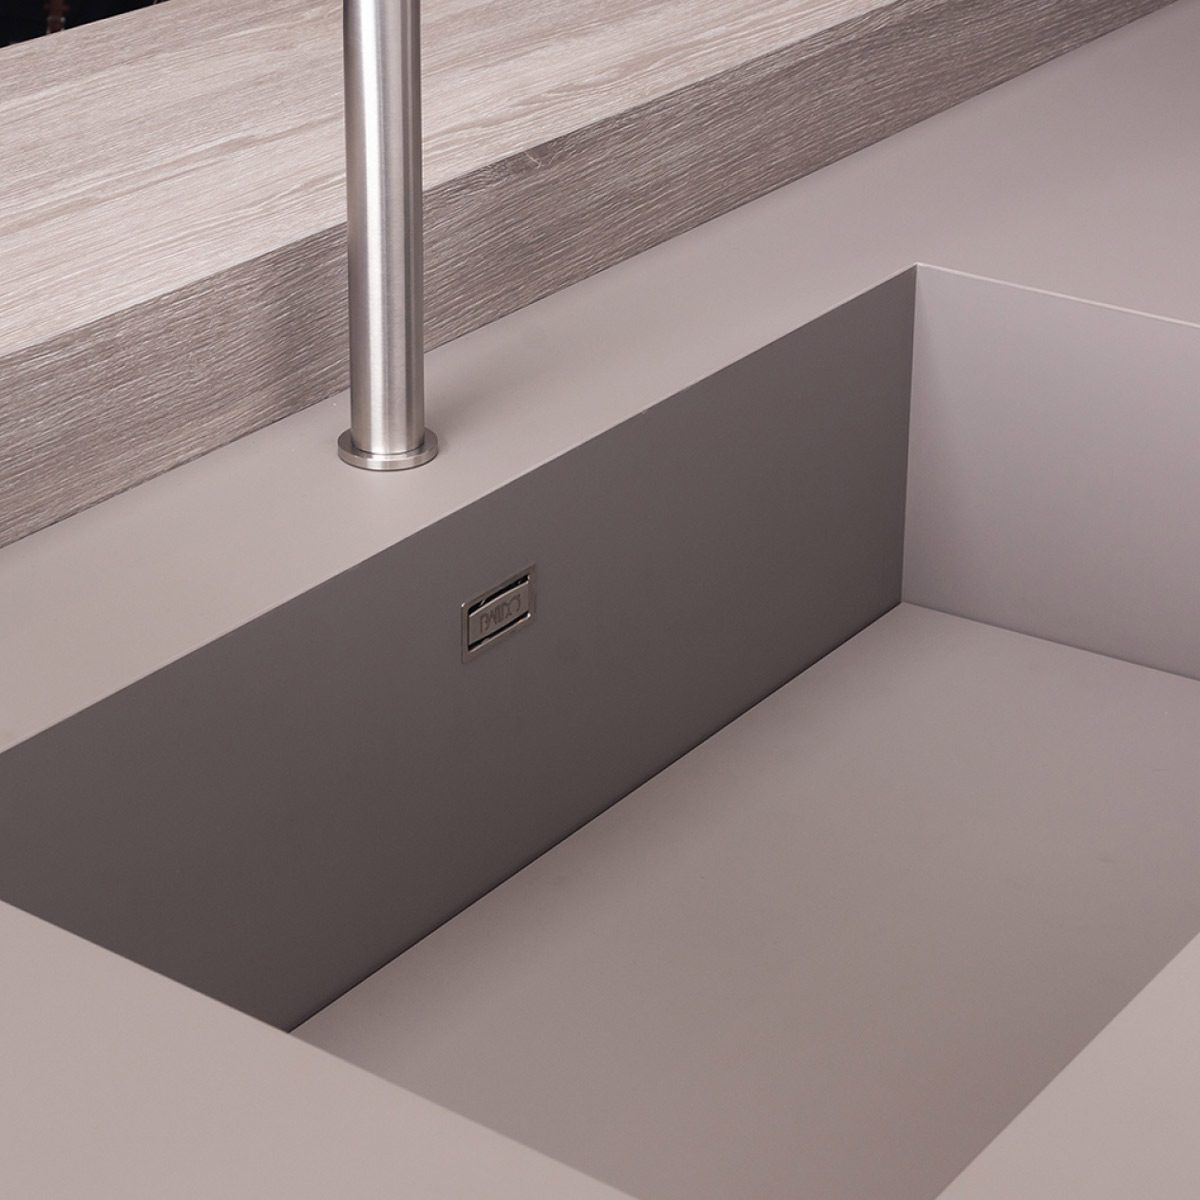 Seamless beige kitchen sink